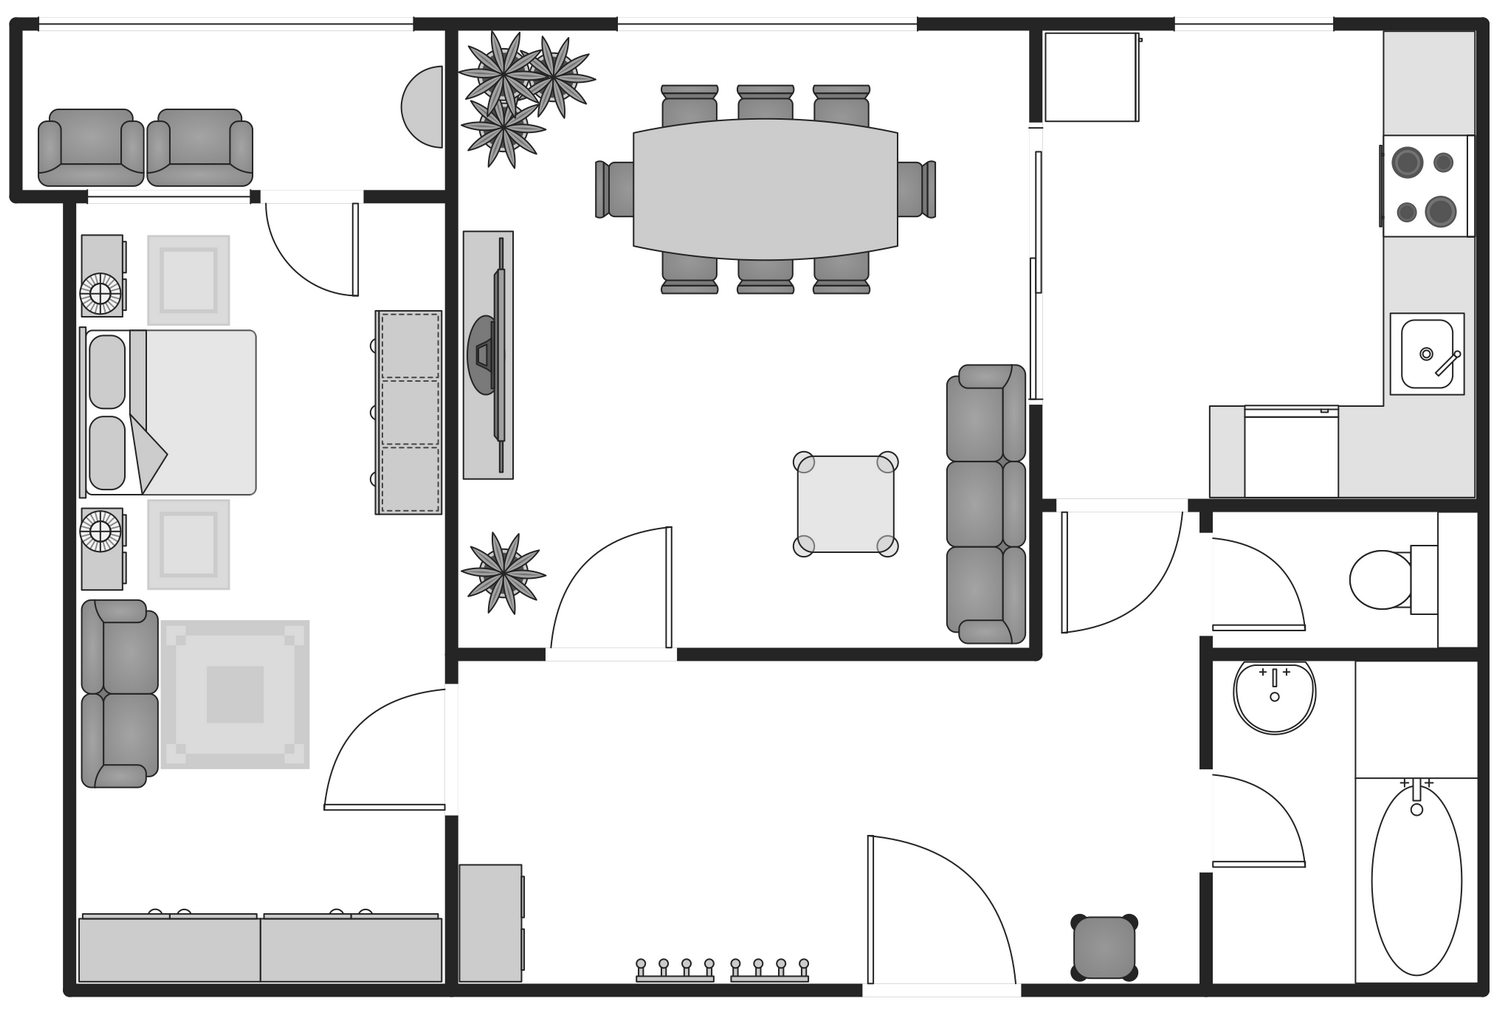 Basic Floor Plan - Apartment Plan